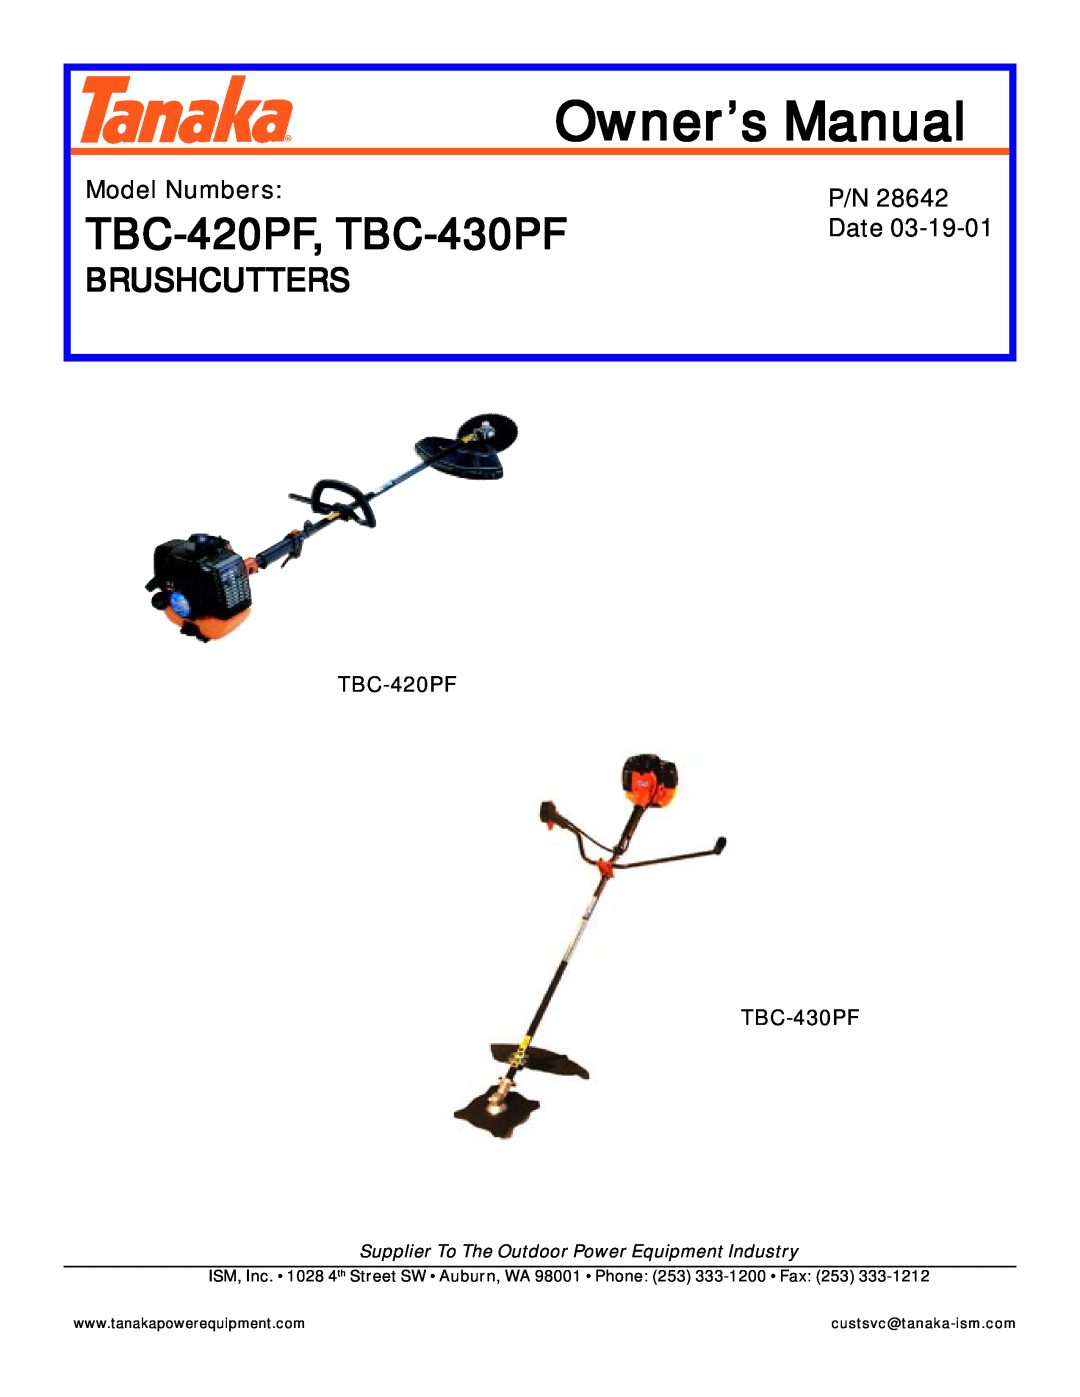 Tanaka TBC-430PF, TBC-420PF manual Model Numbers, Date, TBC-420PF TBC-430PF, Owner’s Manual, TBC-420PF, TBC-430PF 